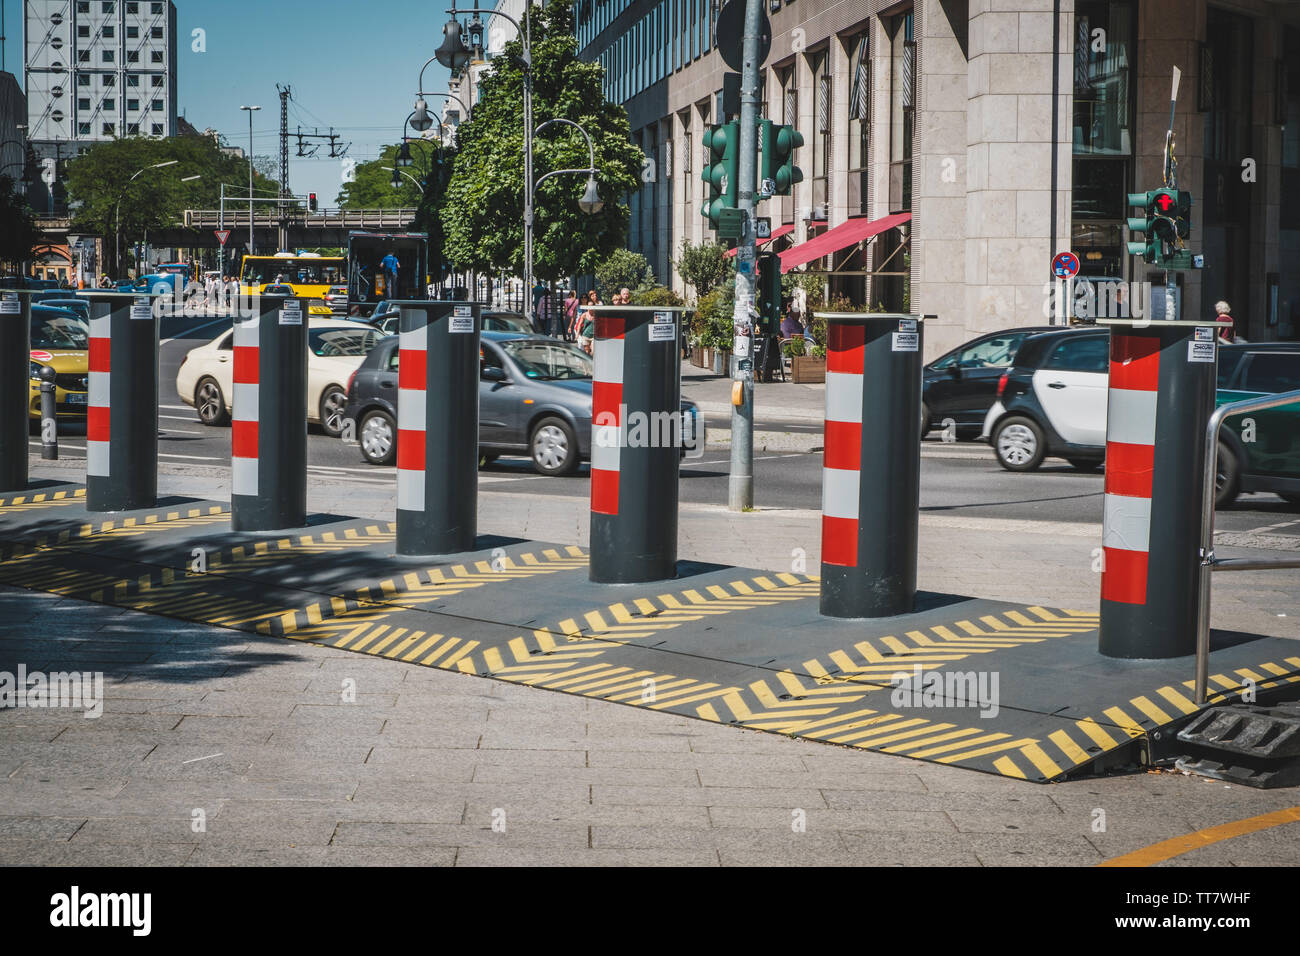 Berlin, Allemagne - juin 2019 : protection anti terreur bloc chariot sur un trottoir par des barricades comme suite à l'attaque de décembre 2016 Banque D'Images